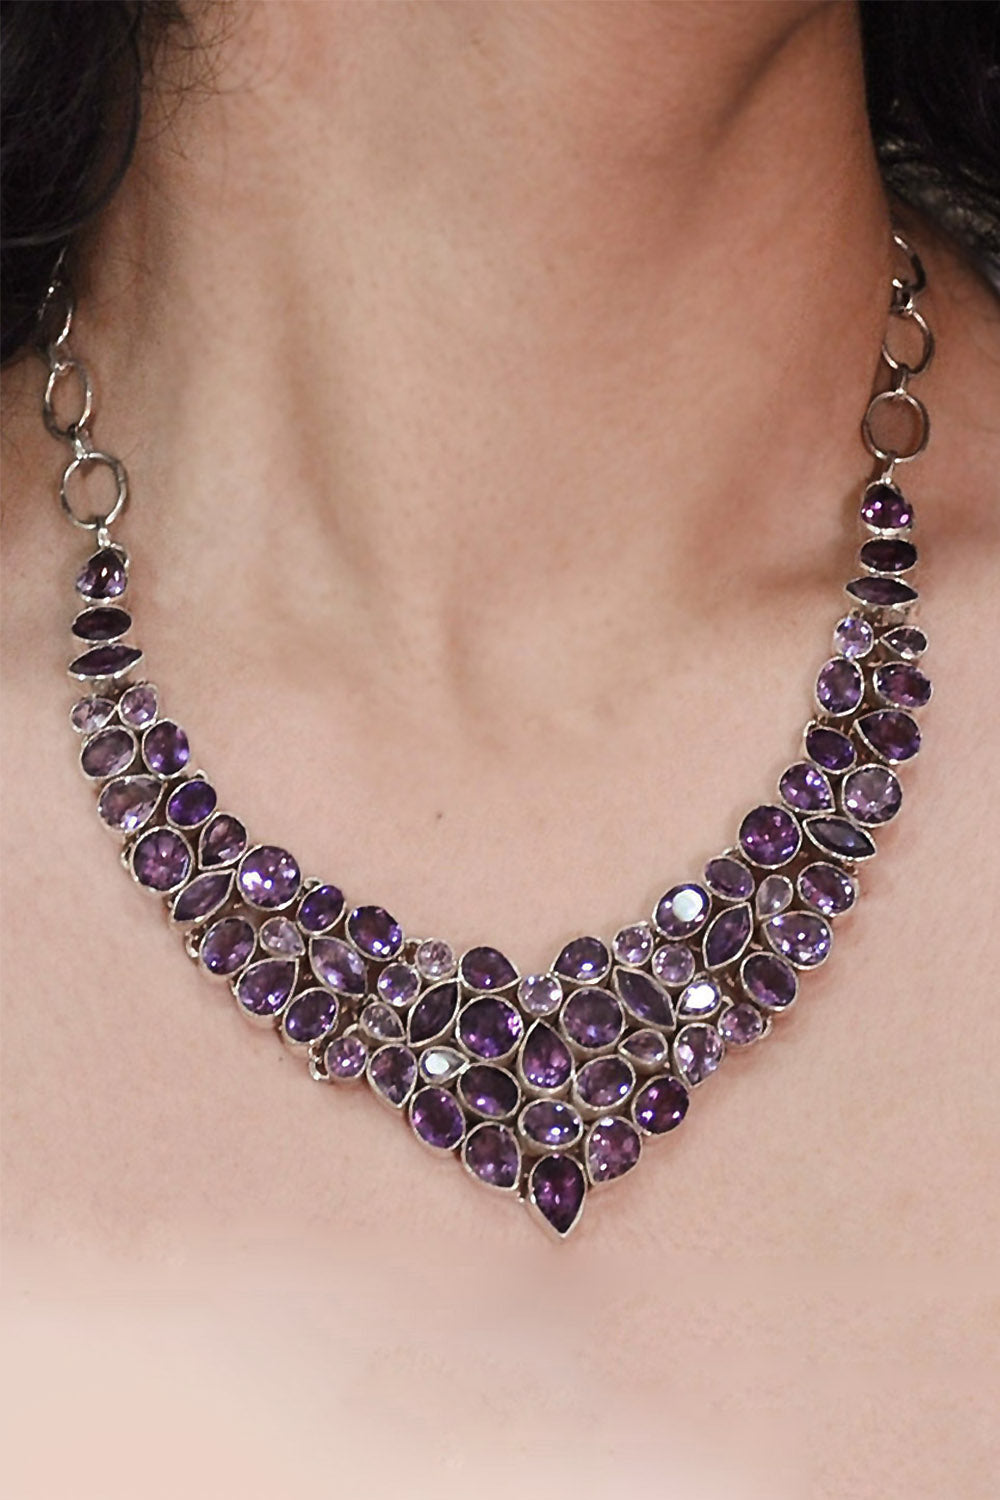 Sivalya Amethyst Statement Necklace - Multi Gemstone